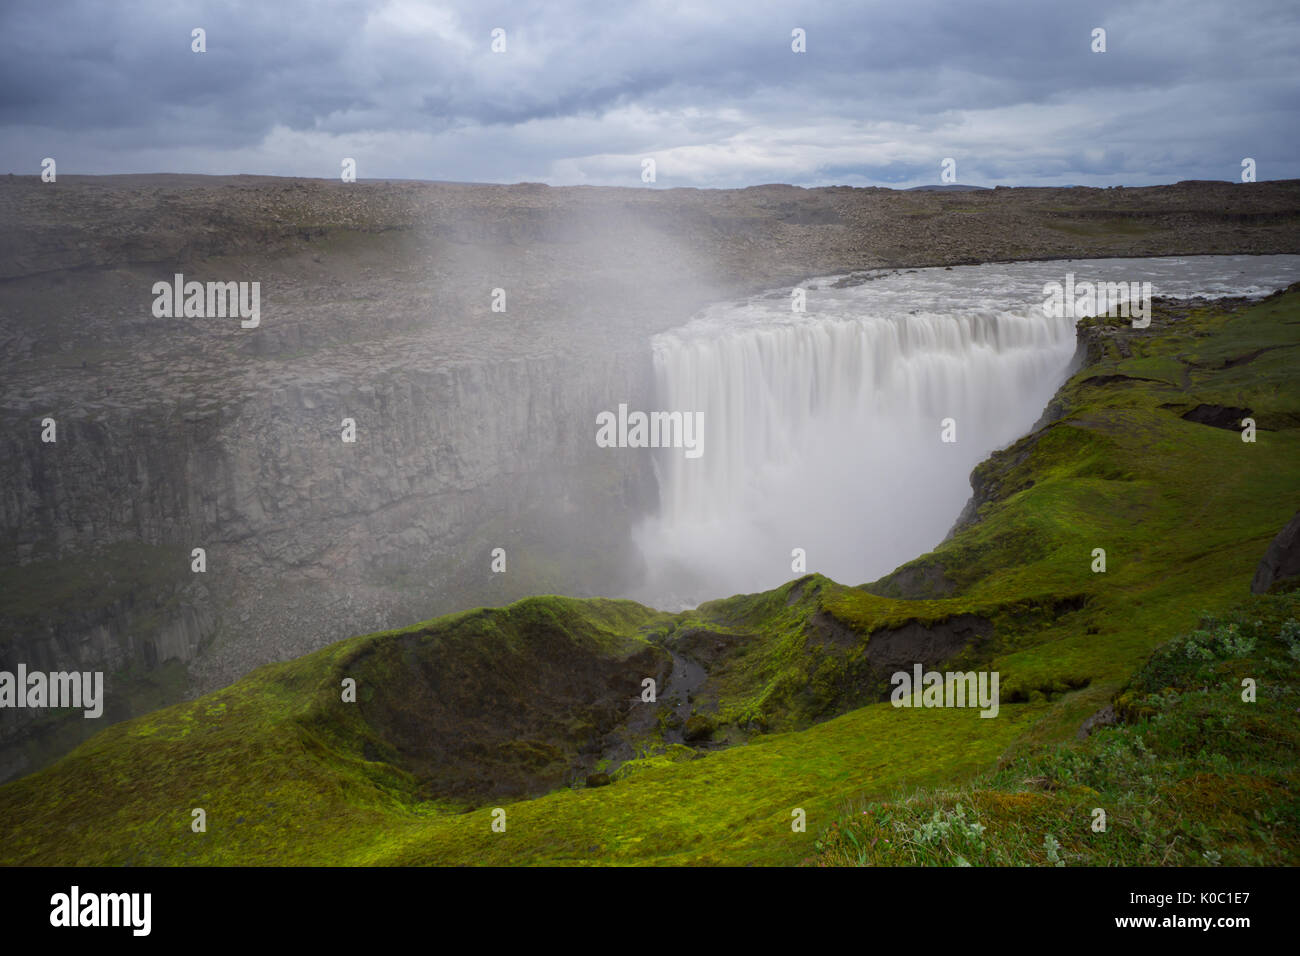 Island - Über enorme detifoss Wasserfall hinter grünen Moos bedeckte Fläche Stockfoto